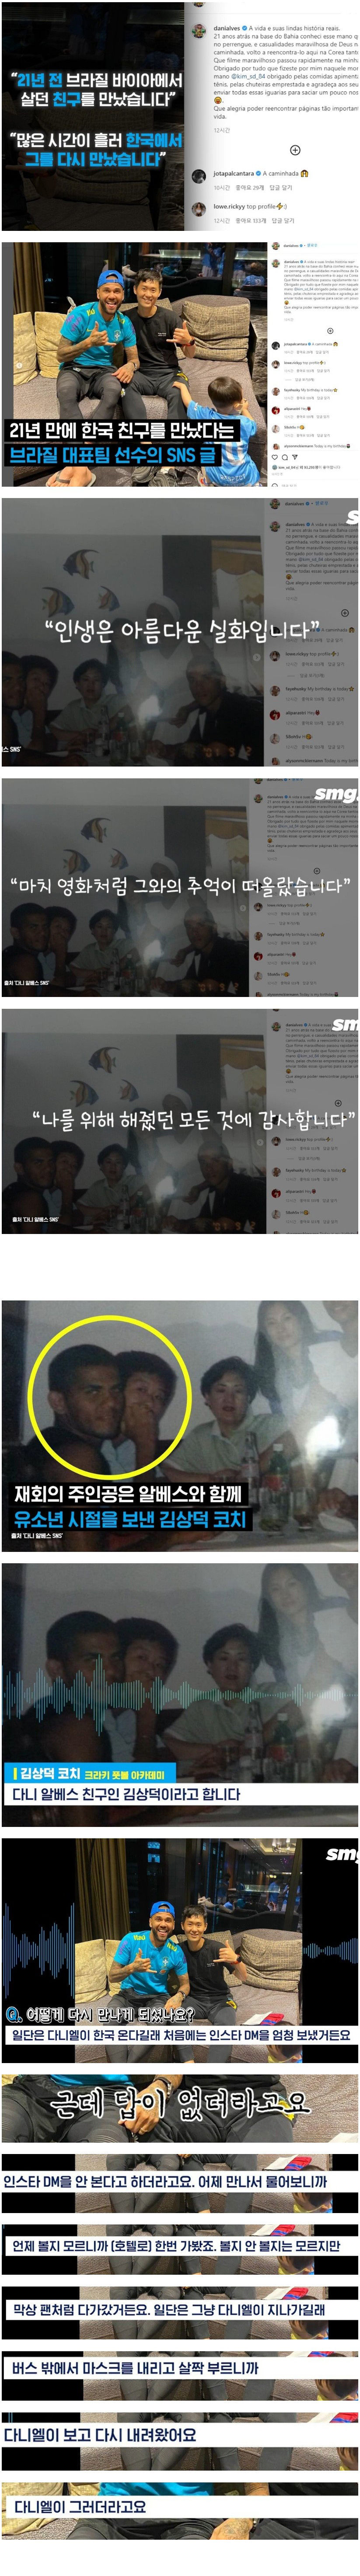 다니 알베스와 한국인 김상덕씨의 사연